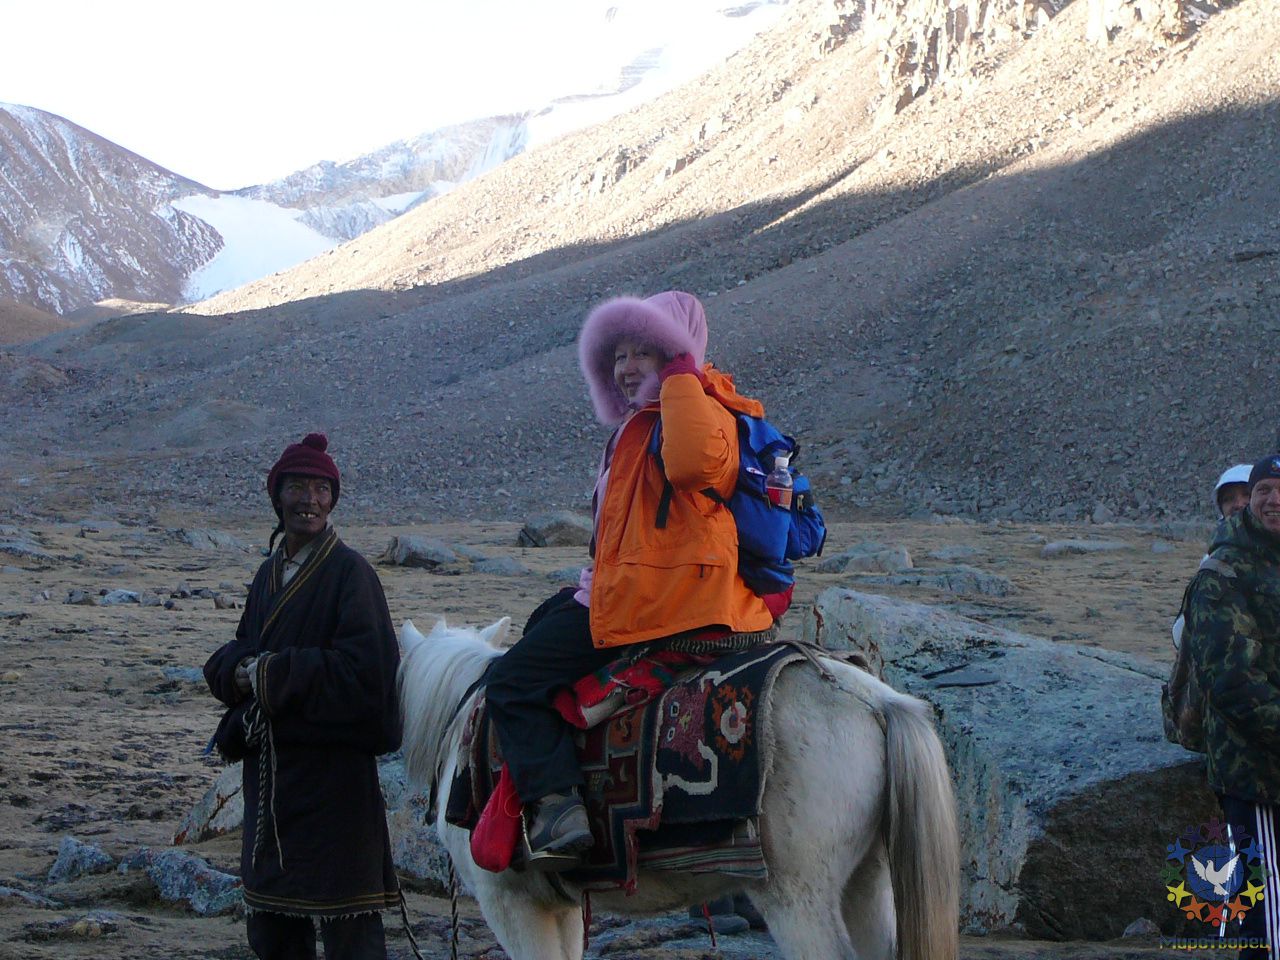 Лошадь, взятая нами одна на всех, пригодилась. - Тибет 2006. Фотовоспоминание 5 лет спустя.